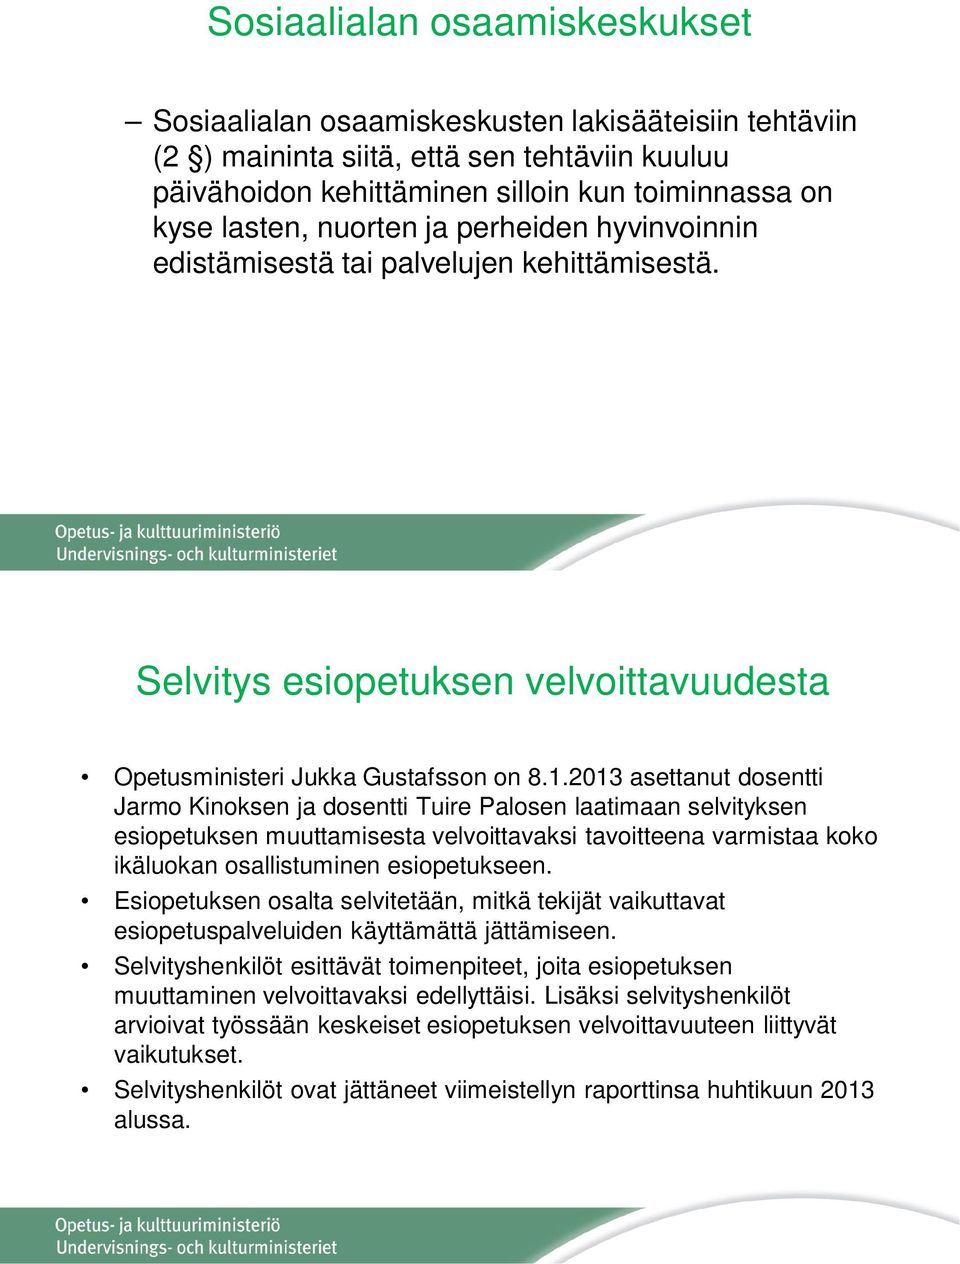 2013 asettanut dosentti Jarmo Kinoksen ja dosentti Tuire Palosen laatimaan selvityksen esiopetuksen muuttamisesta velvoittavaksi tavoitteena varmistaa koko ikäluokan osallistuminen esiopetukseen.